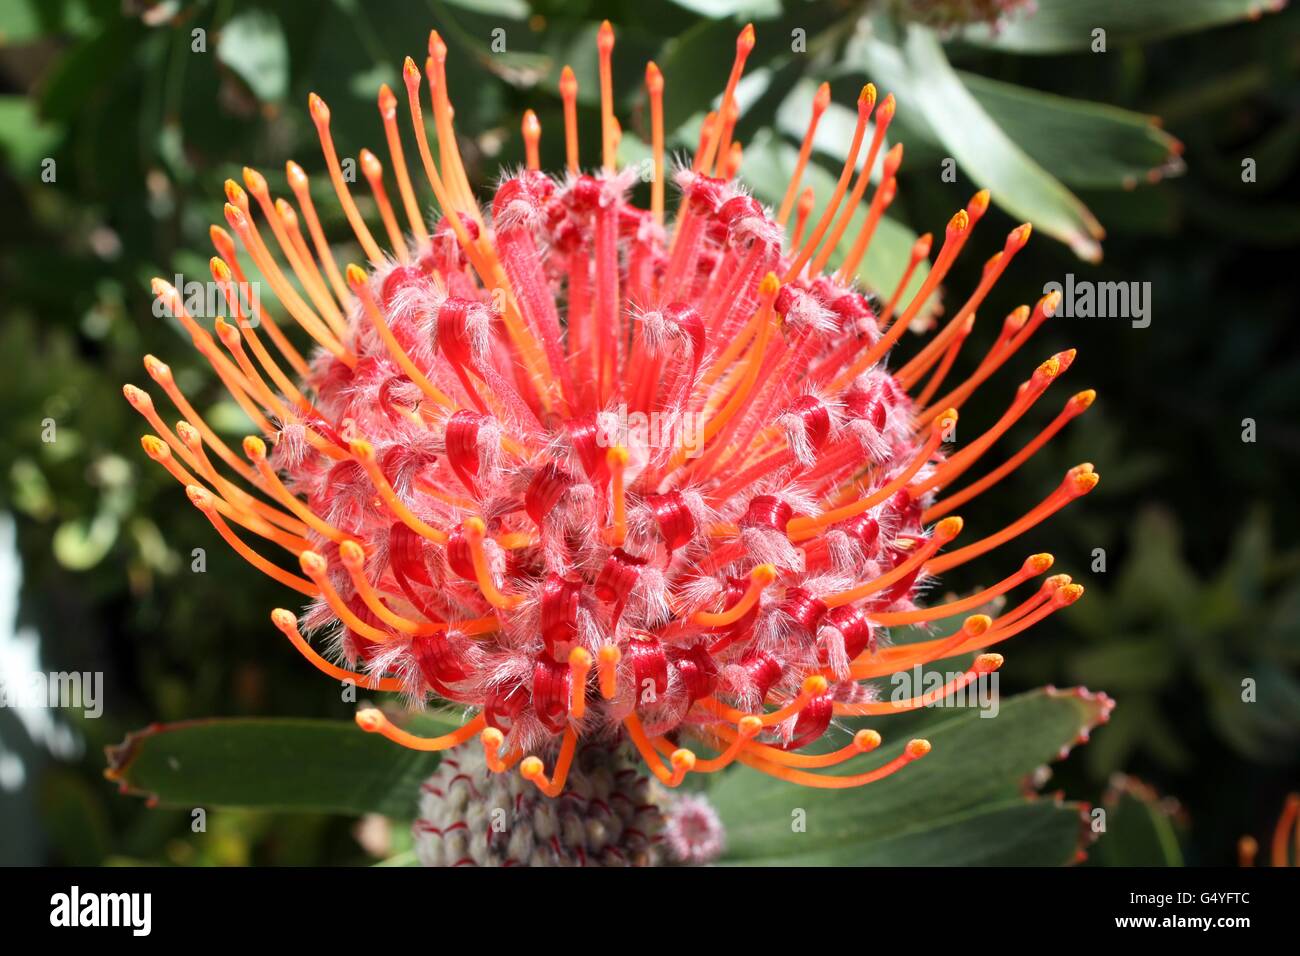 Red Australian native flower Leucospermum in full bloom Stock Photo